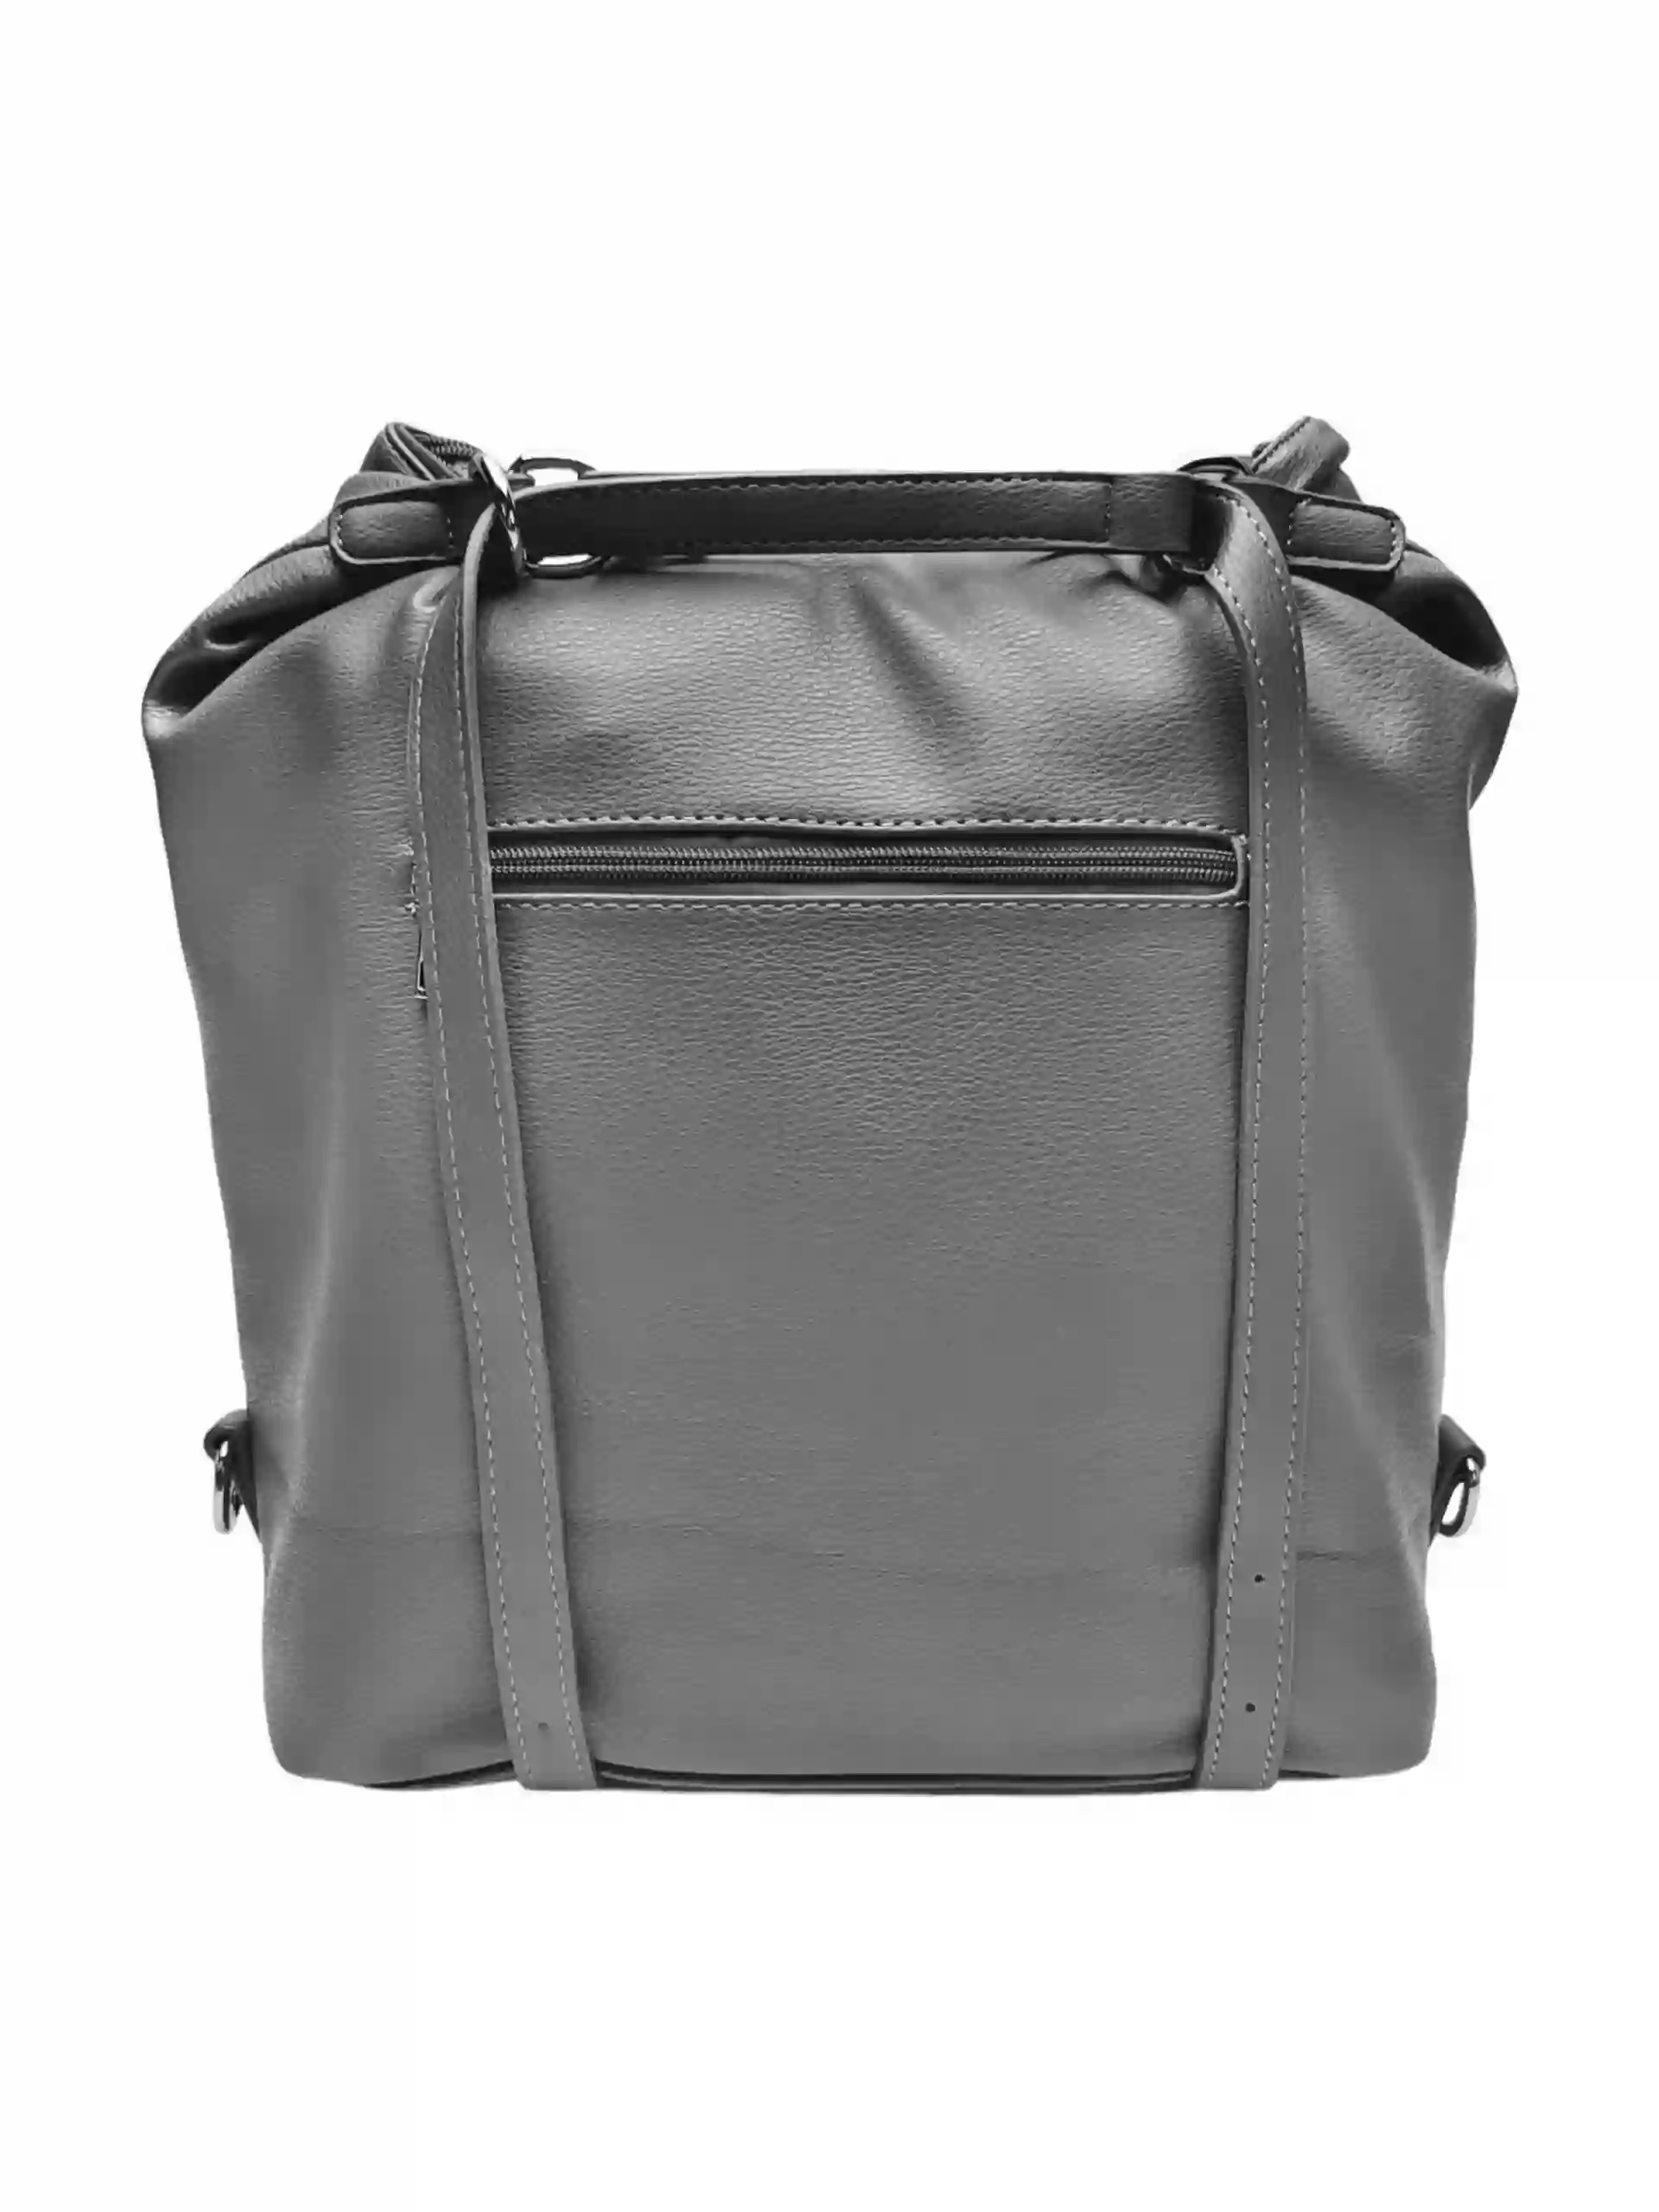 Velká středně šedá kabelka a batoh 2v1, Tapple, X366, zadní strana kabelko-batohu 2v1 s popruhy